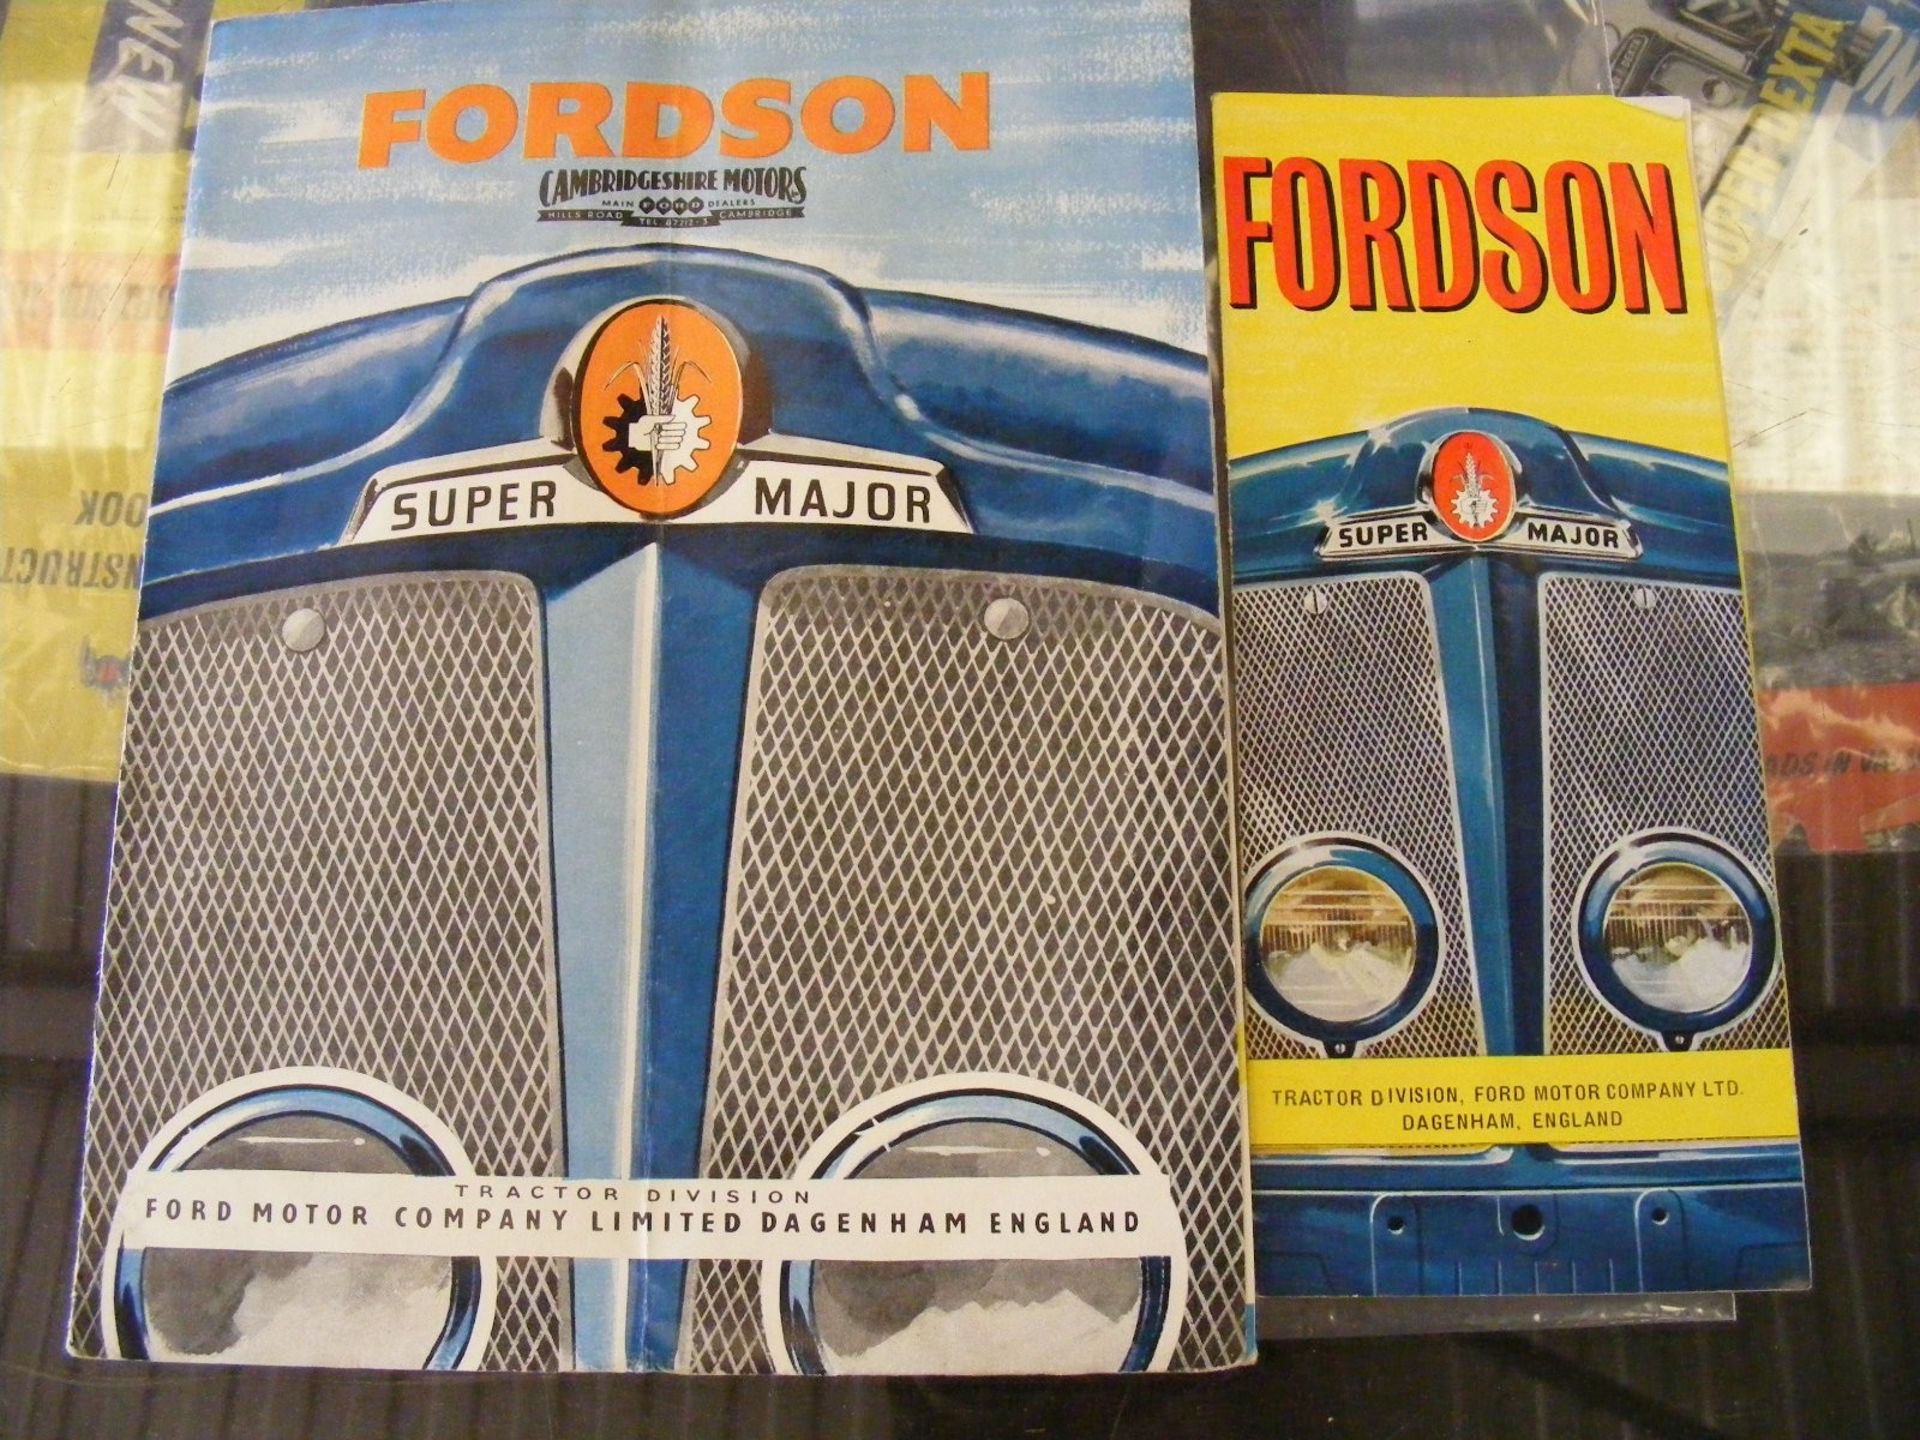 Fordson Super Major leaflets